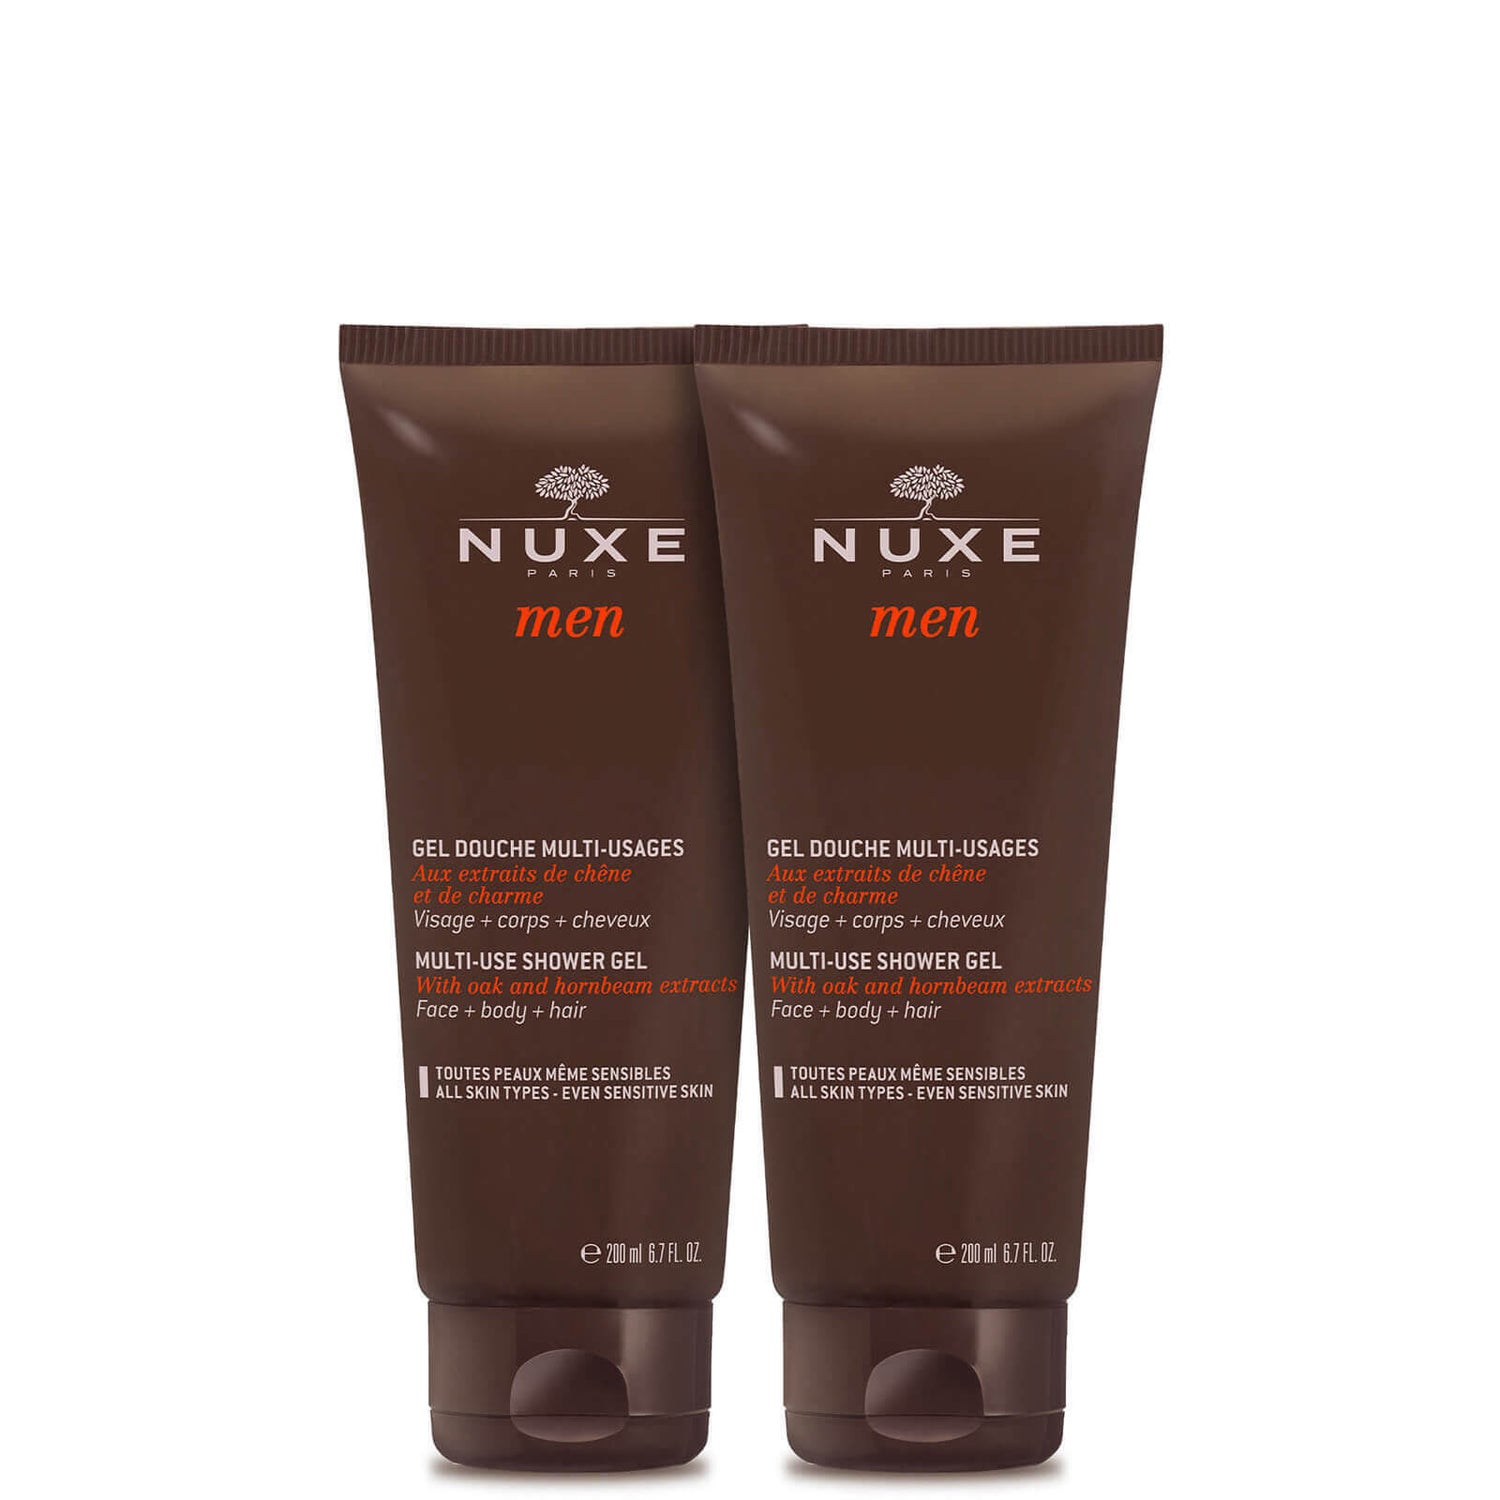 Men's Shower Gels duo, NUXE Men | NUXE